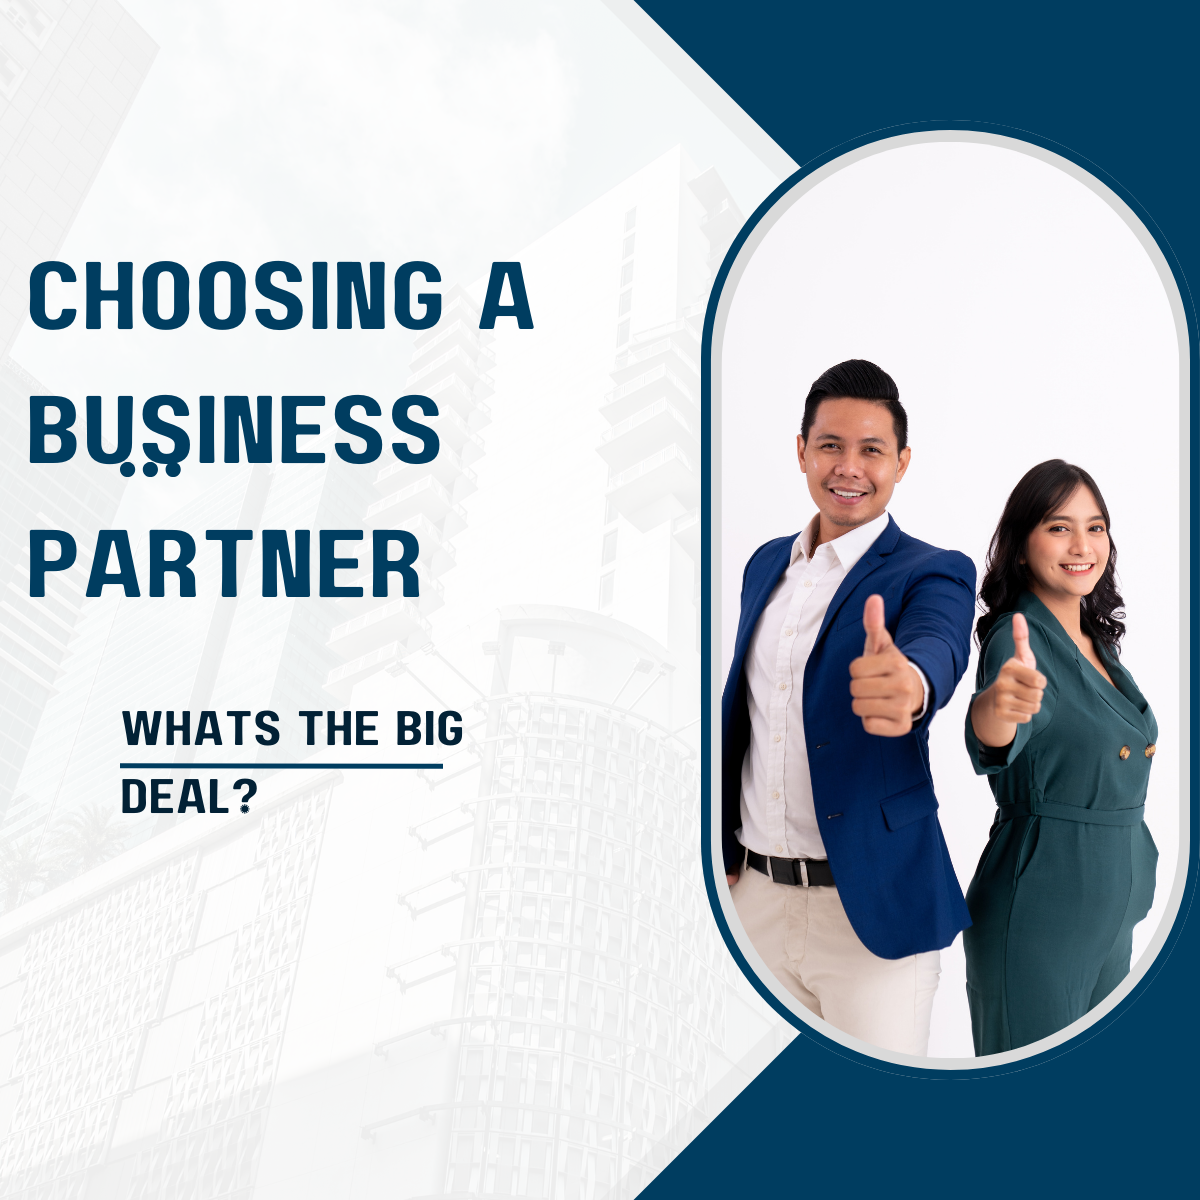 Choosing a business partner